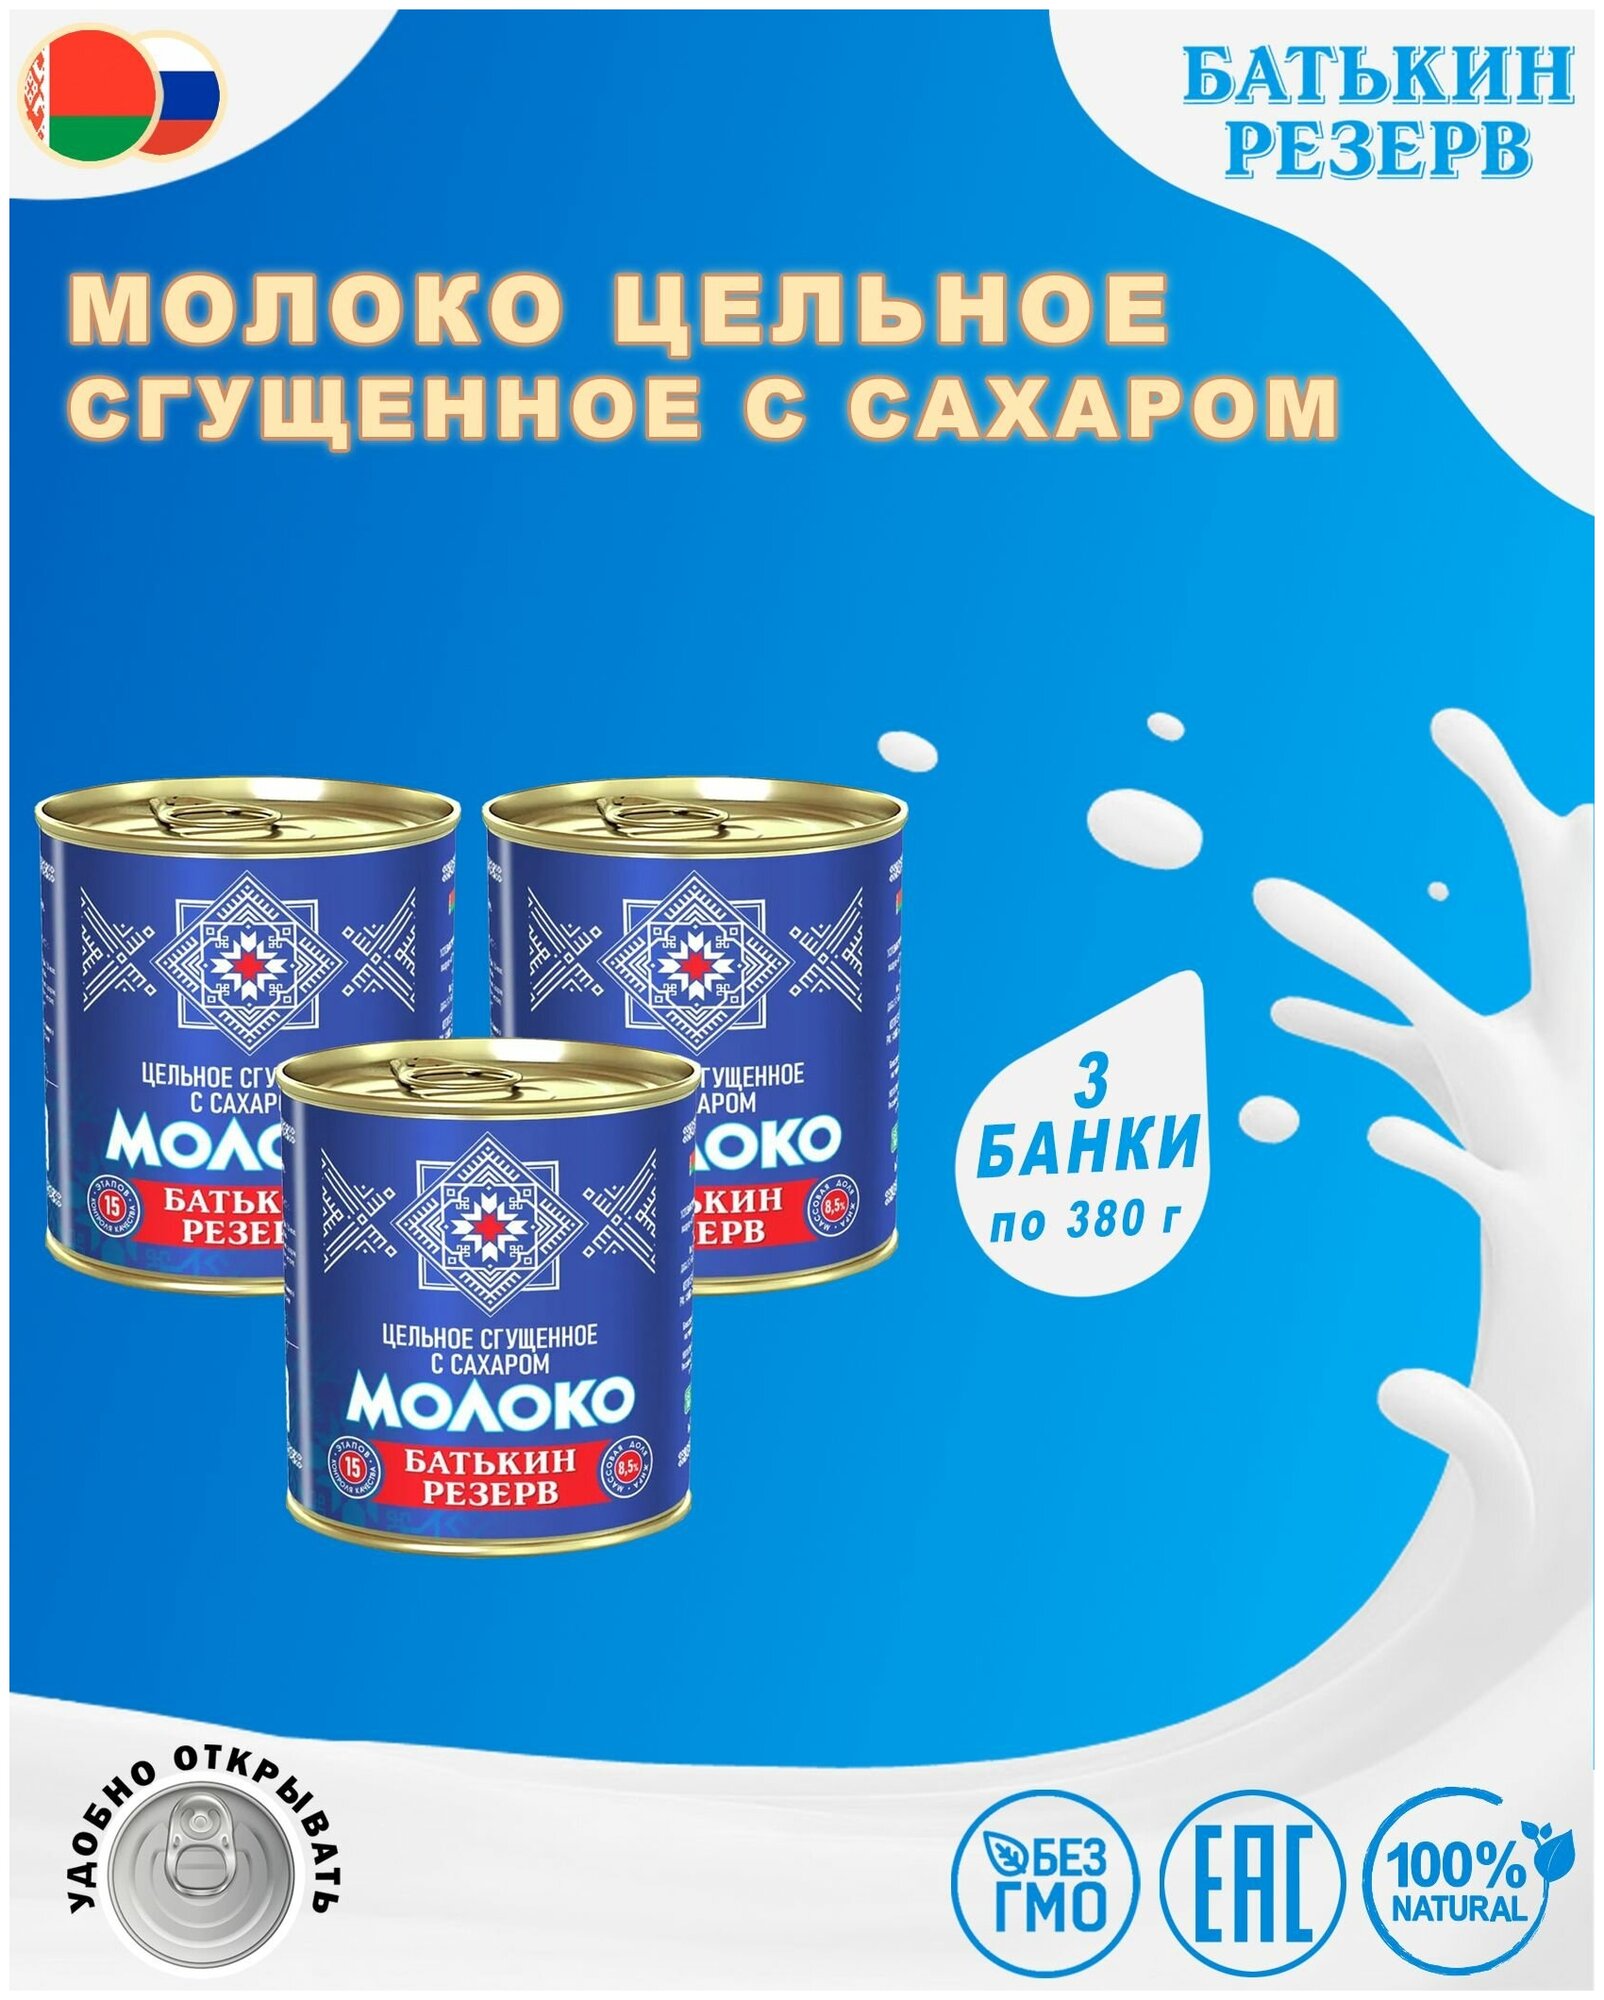 Молоко цельное сгущенное с сахаром, Батькин резерв, ГОСТ, 3 шт. по 380 г